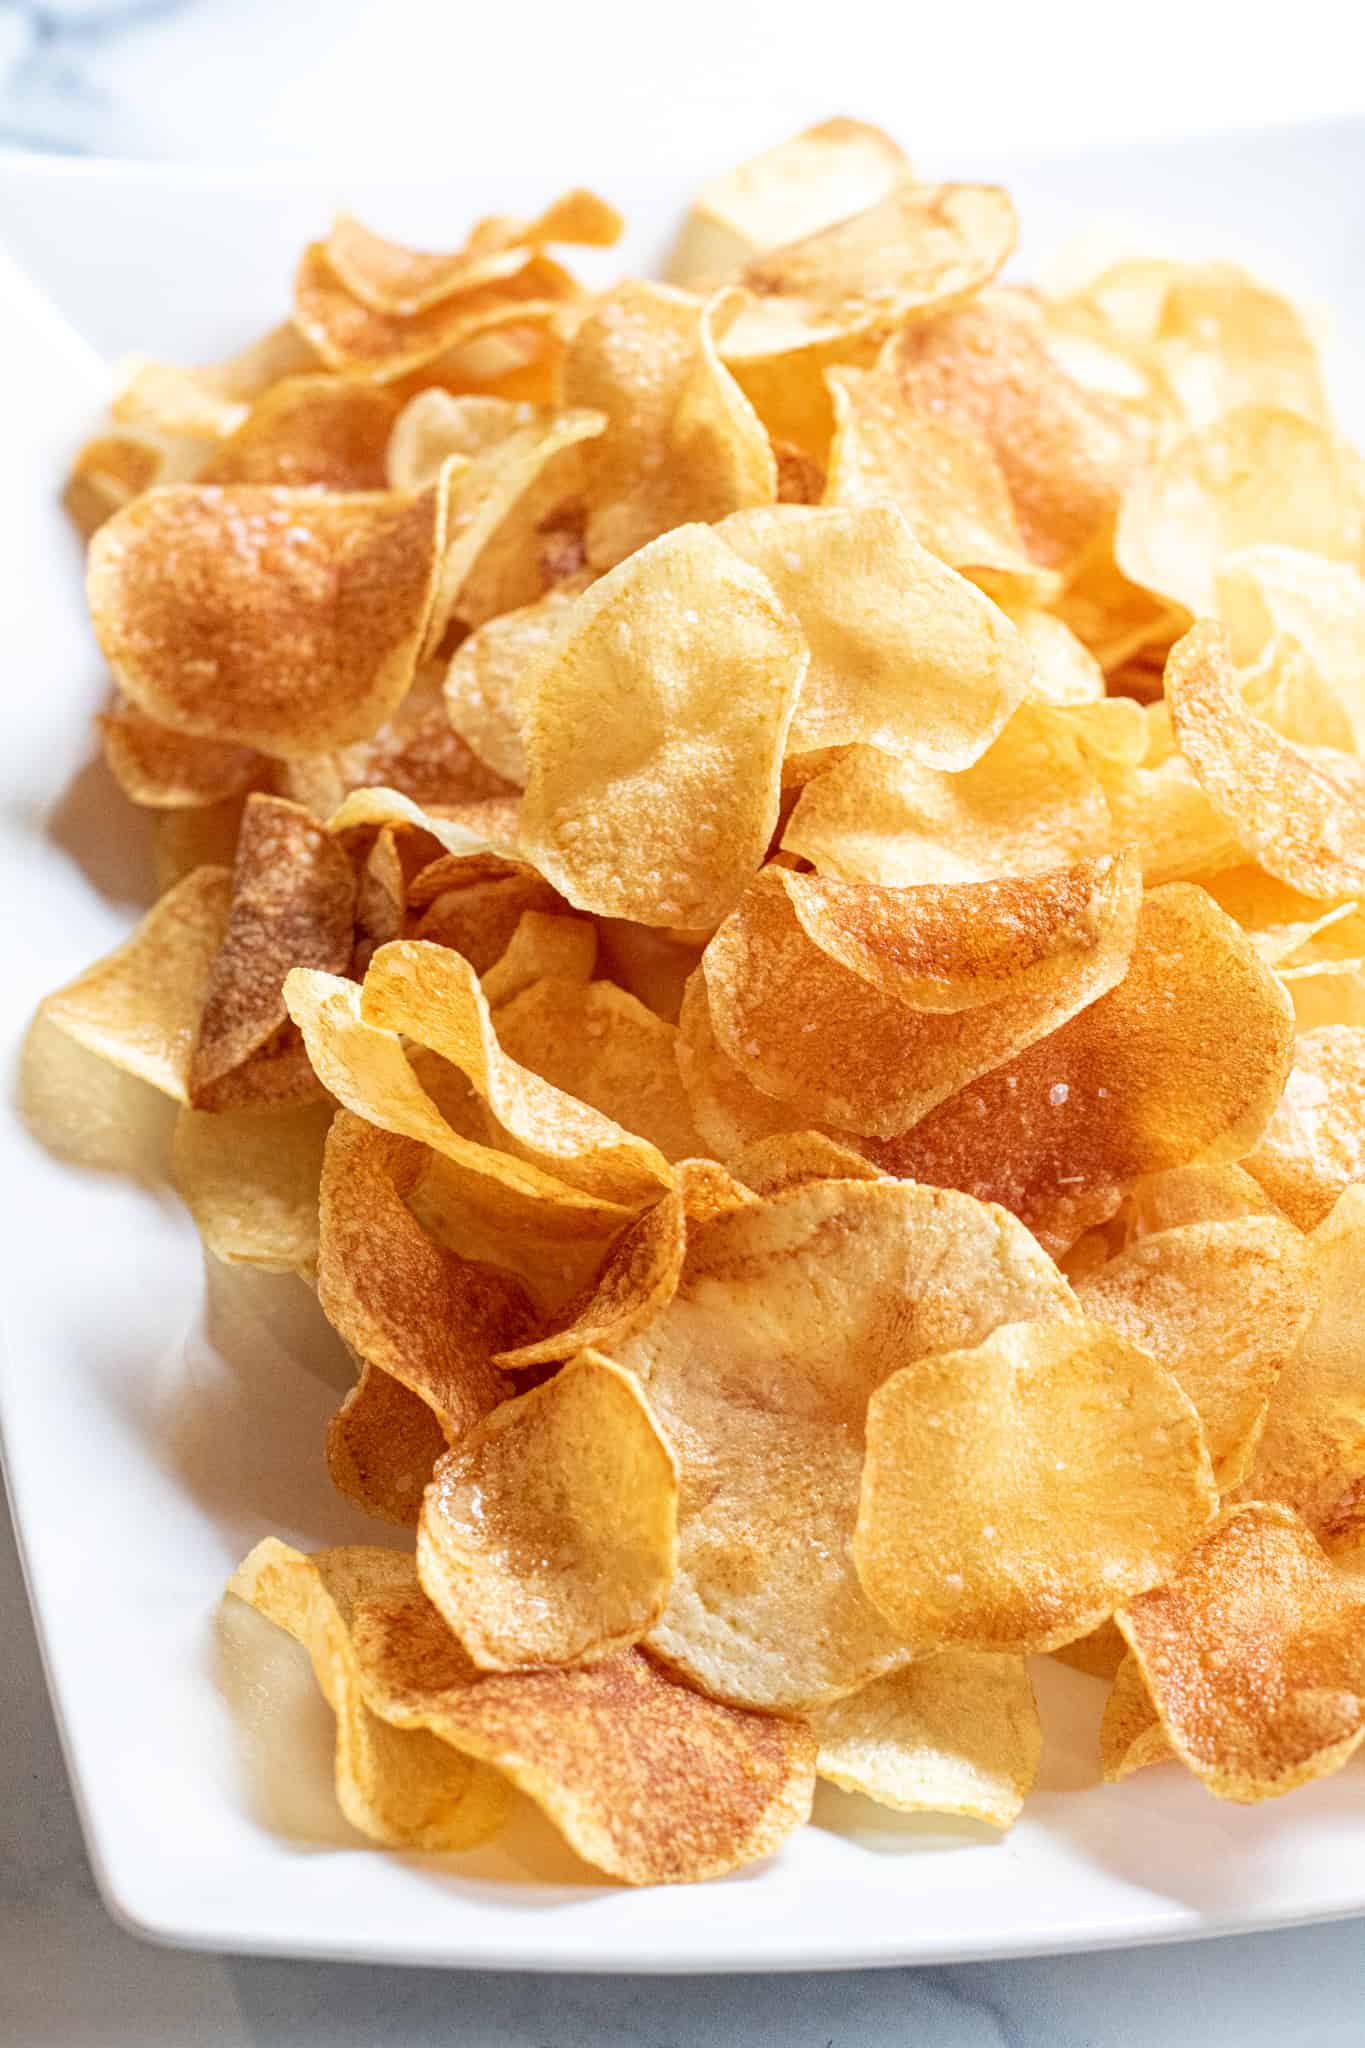 Crispy potato chips on a rectangular white plate.